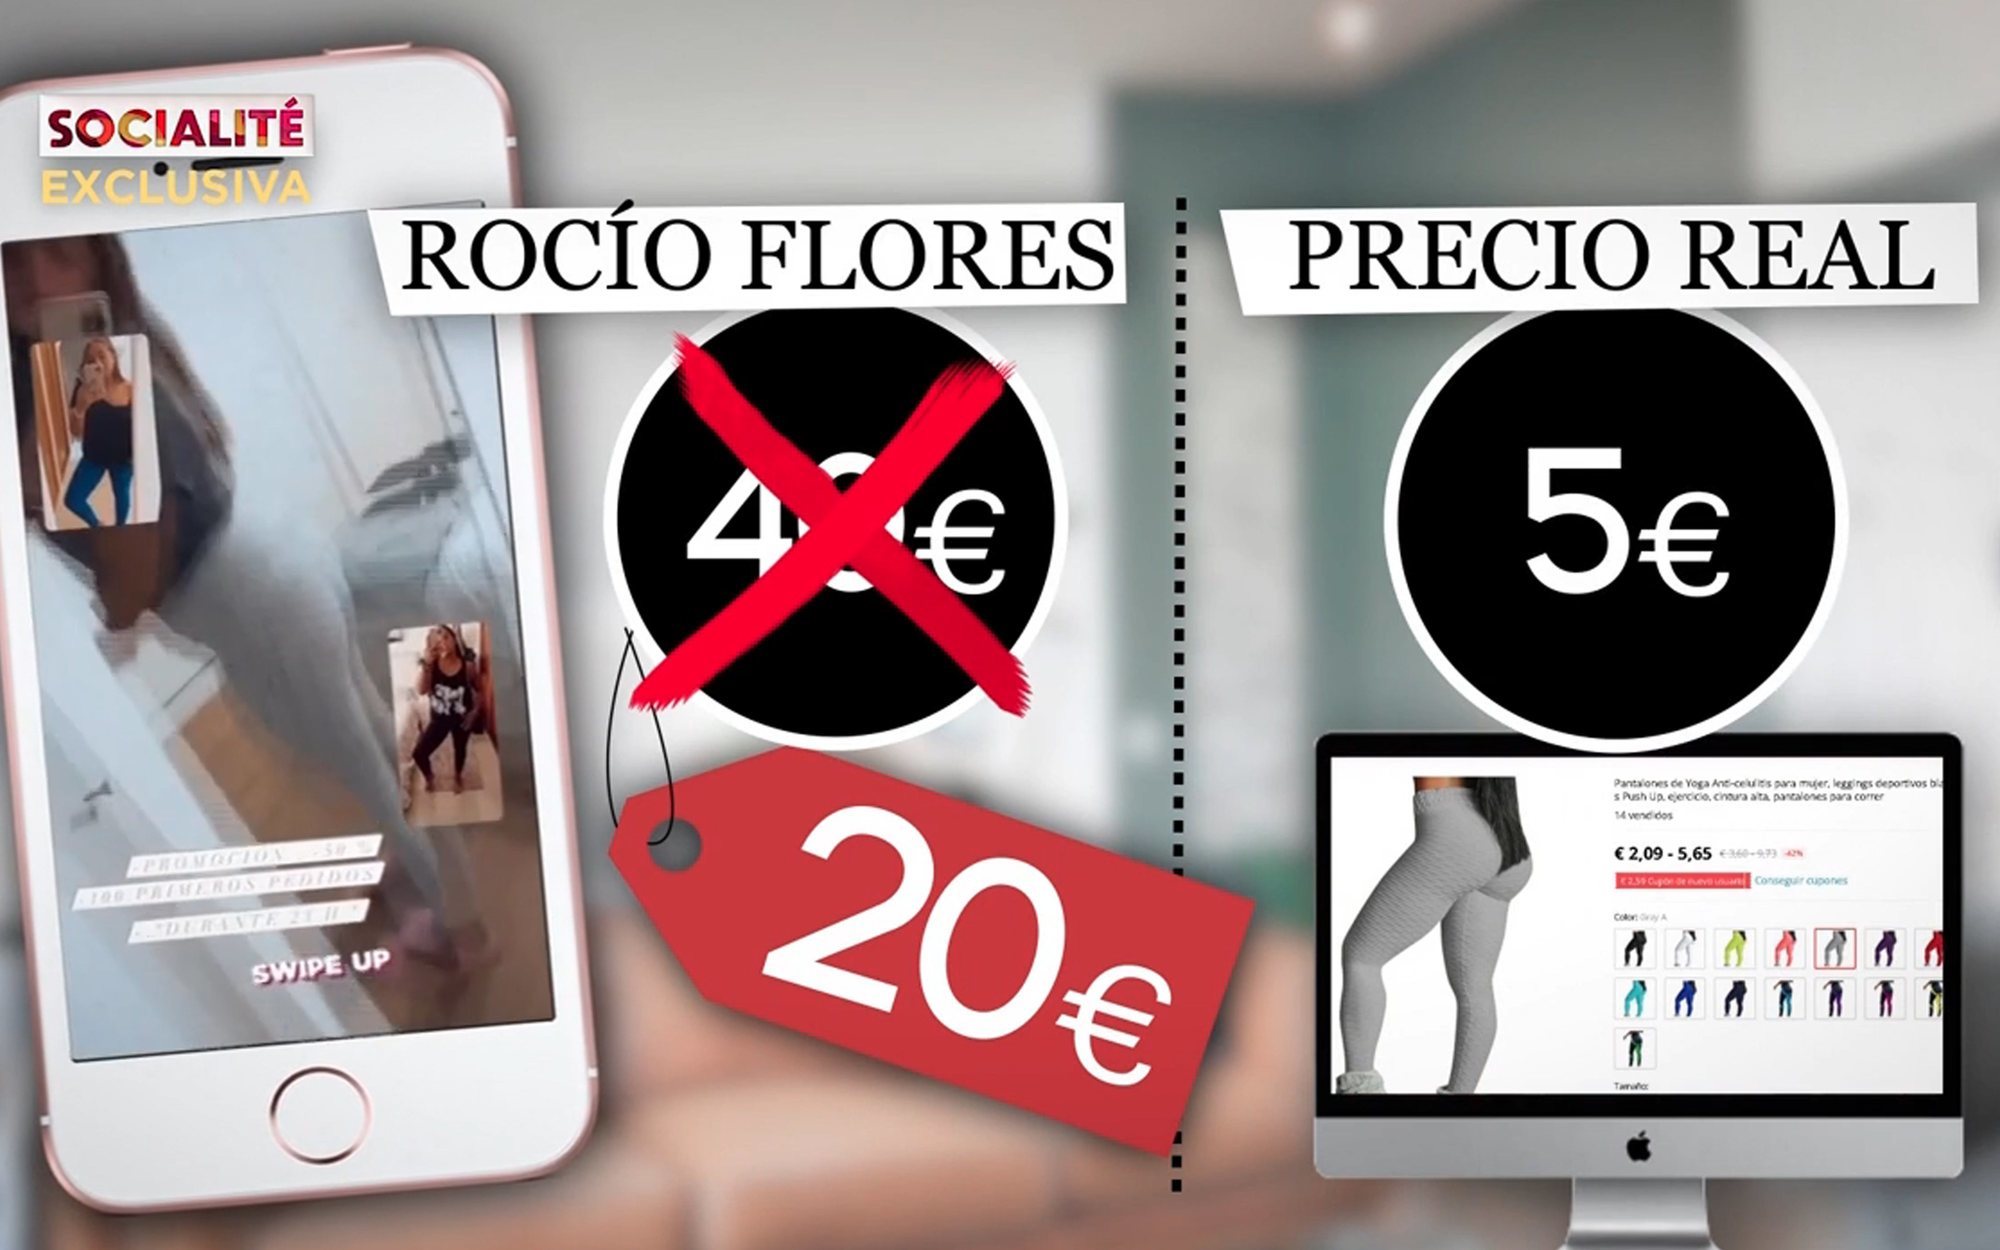 Chabelita y Rocío Flores colaboran con una marca para vender productos a precio mucho mayor. ¿Es un fraude?